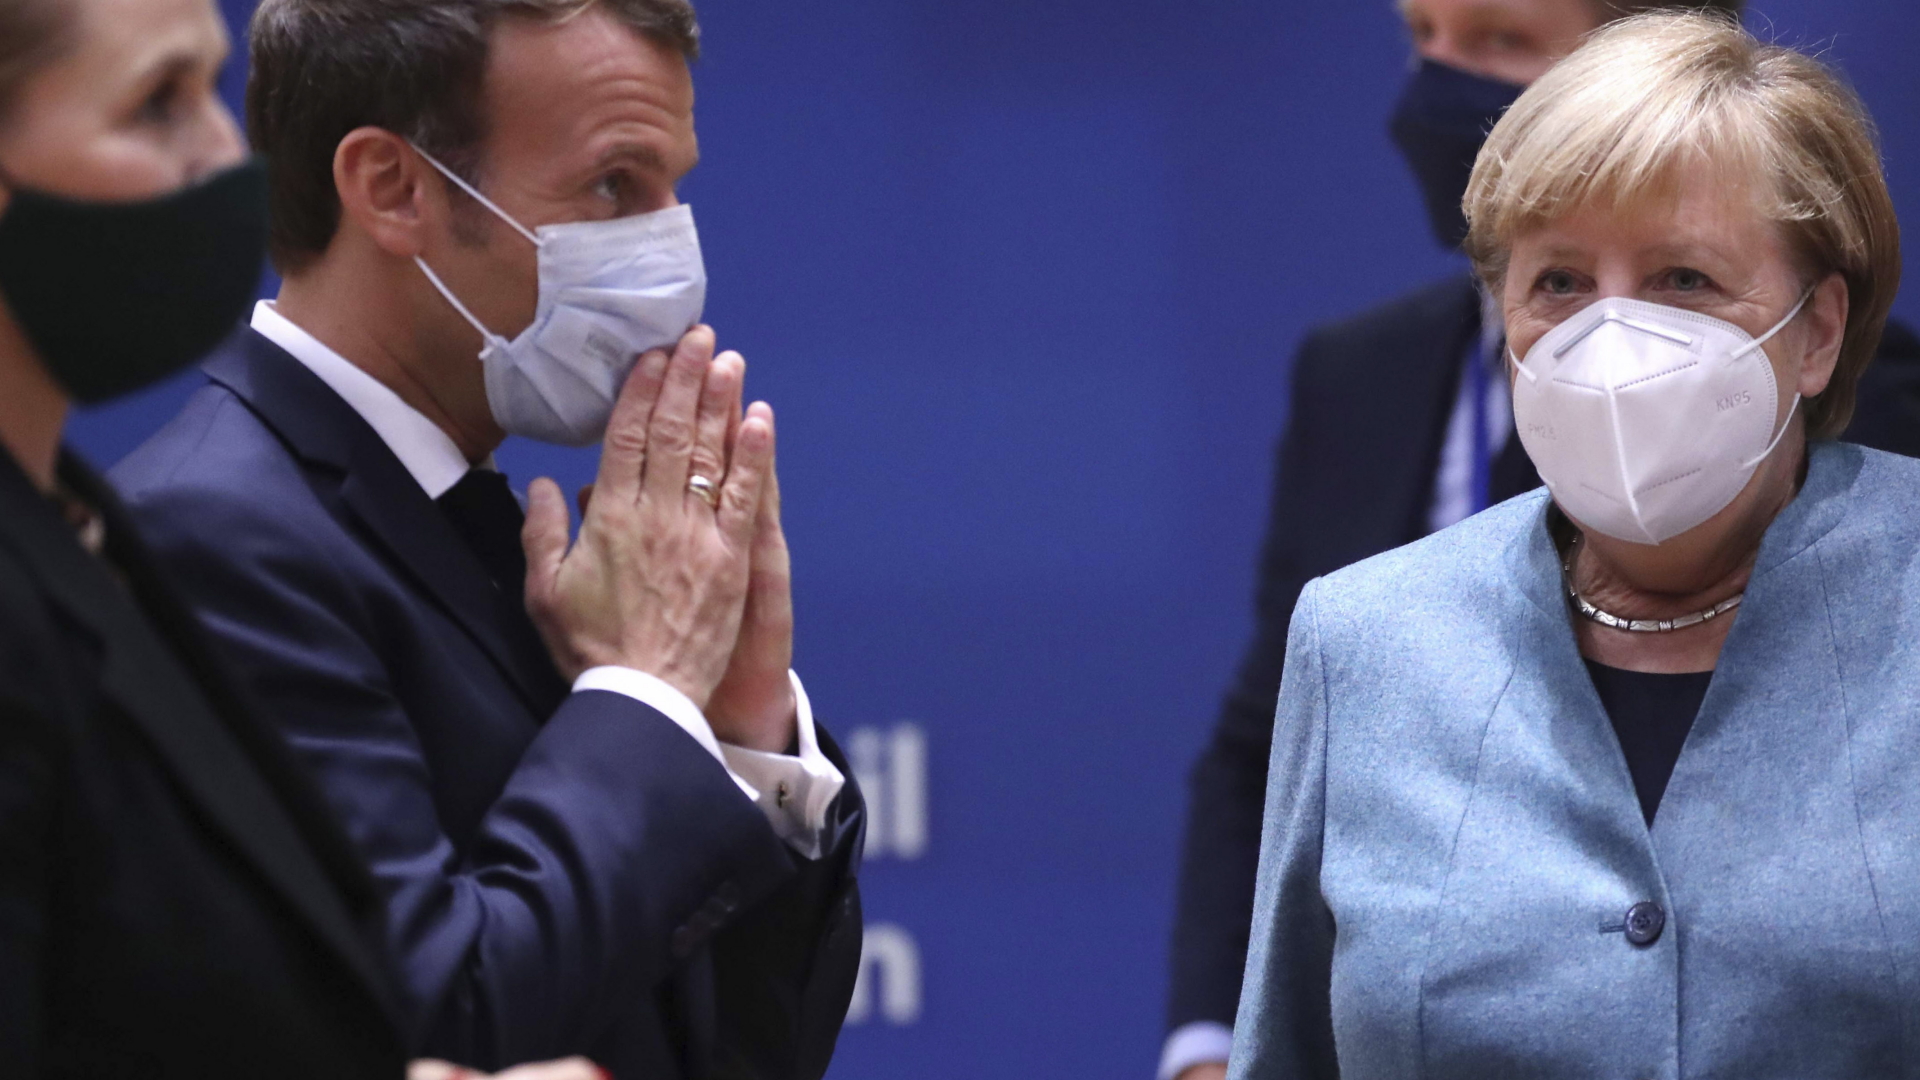 Bundeskanzlerin Angela Merkel und Frankreichs Präsident Emmanuel Macron beim EU-Gipfel Mitte Oktober 2020. Beide tragen einen Mund-Nasen-Schutz. | dpa